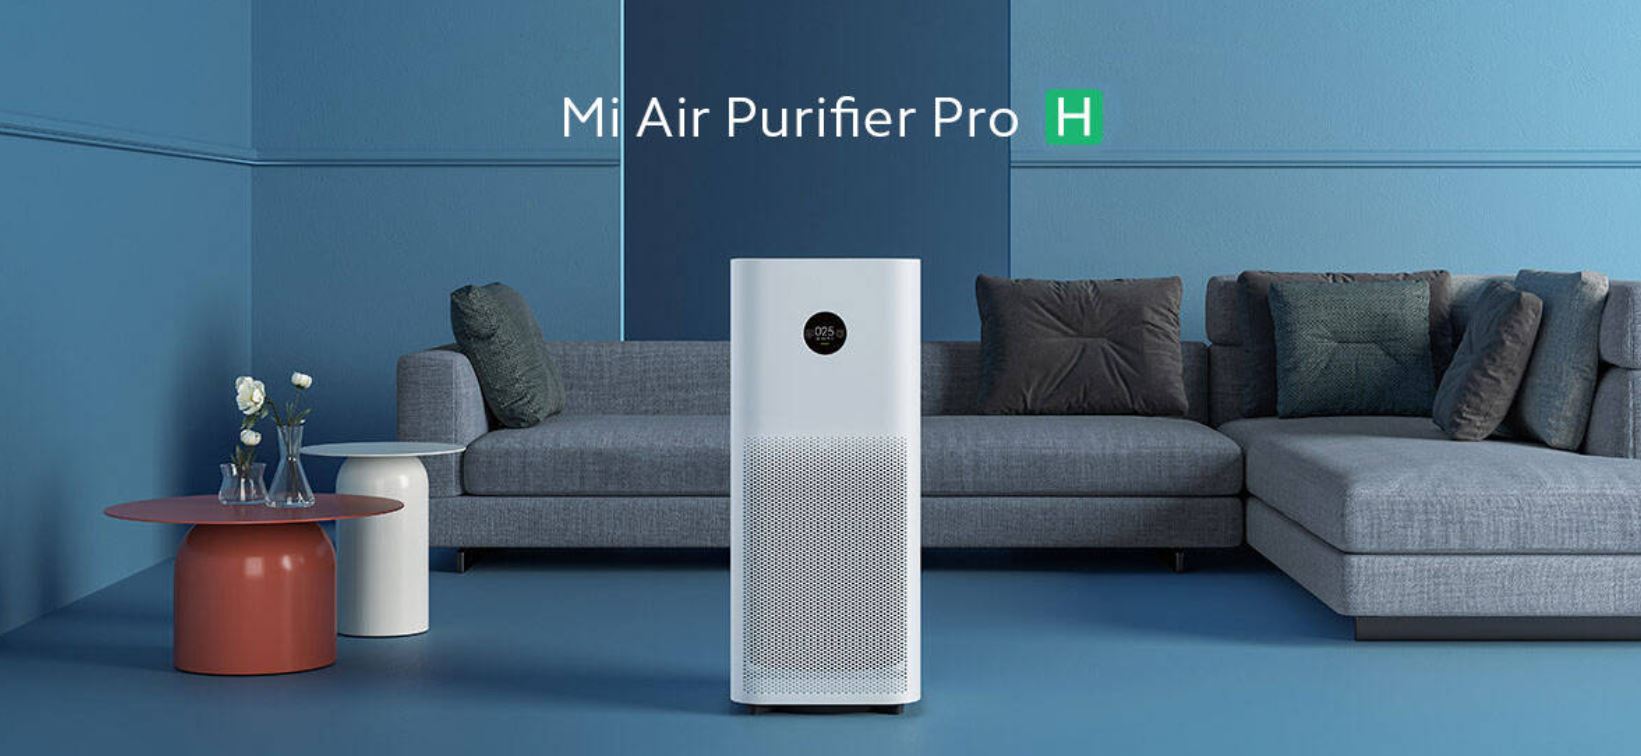 Jak wybrać właściwy oczyszczacz powietrza - Zestawienie 10 najlepszych modeli - Xiaomi Mi Air Purifier Pro H